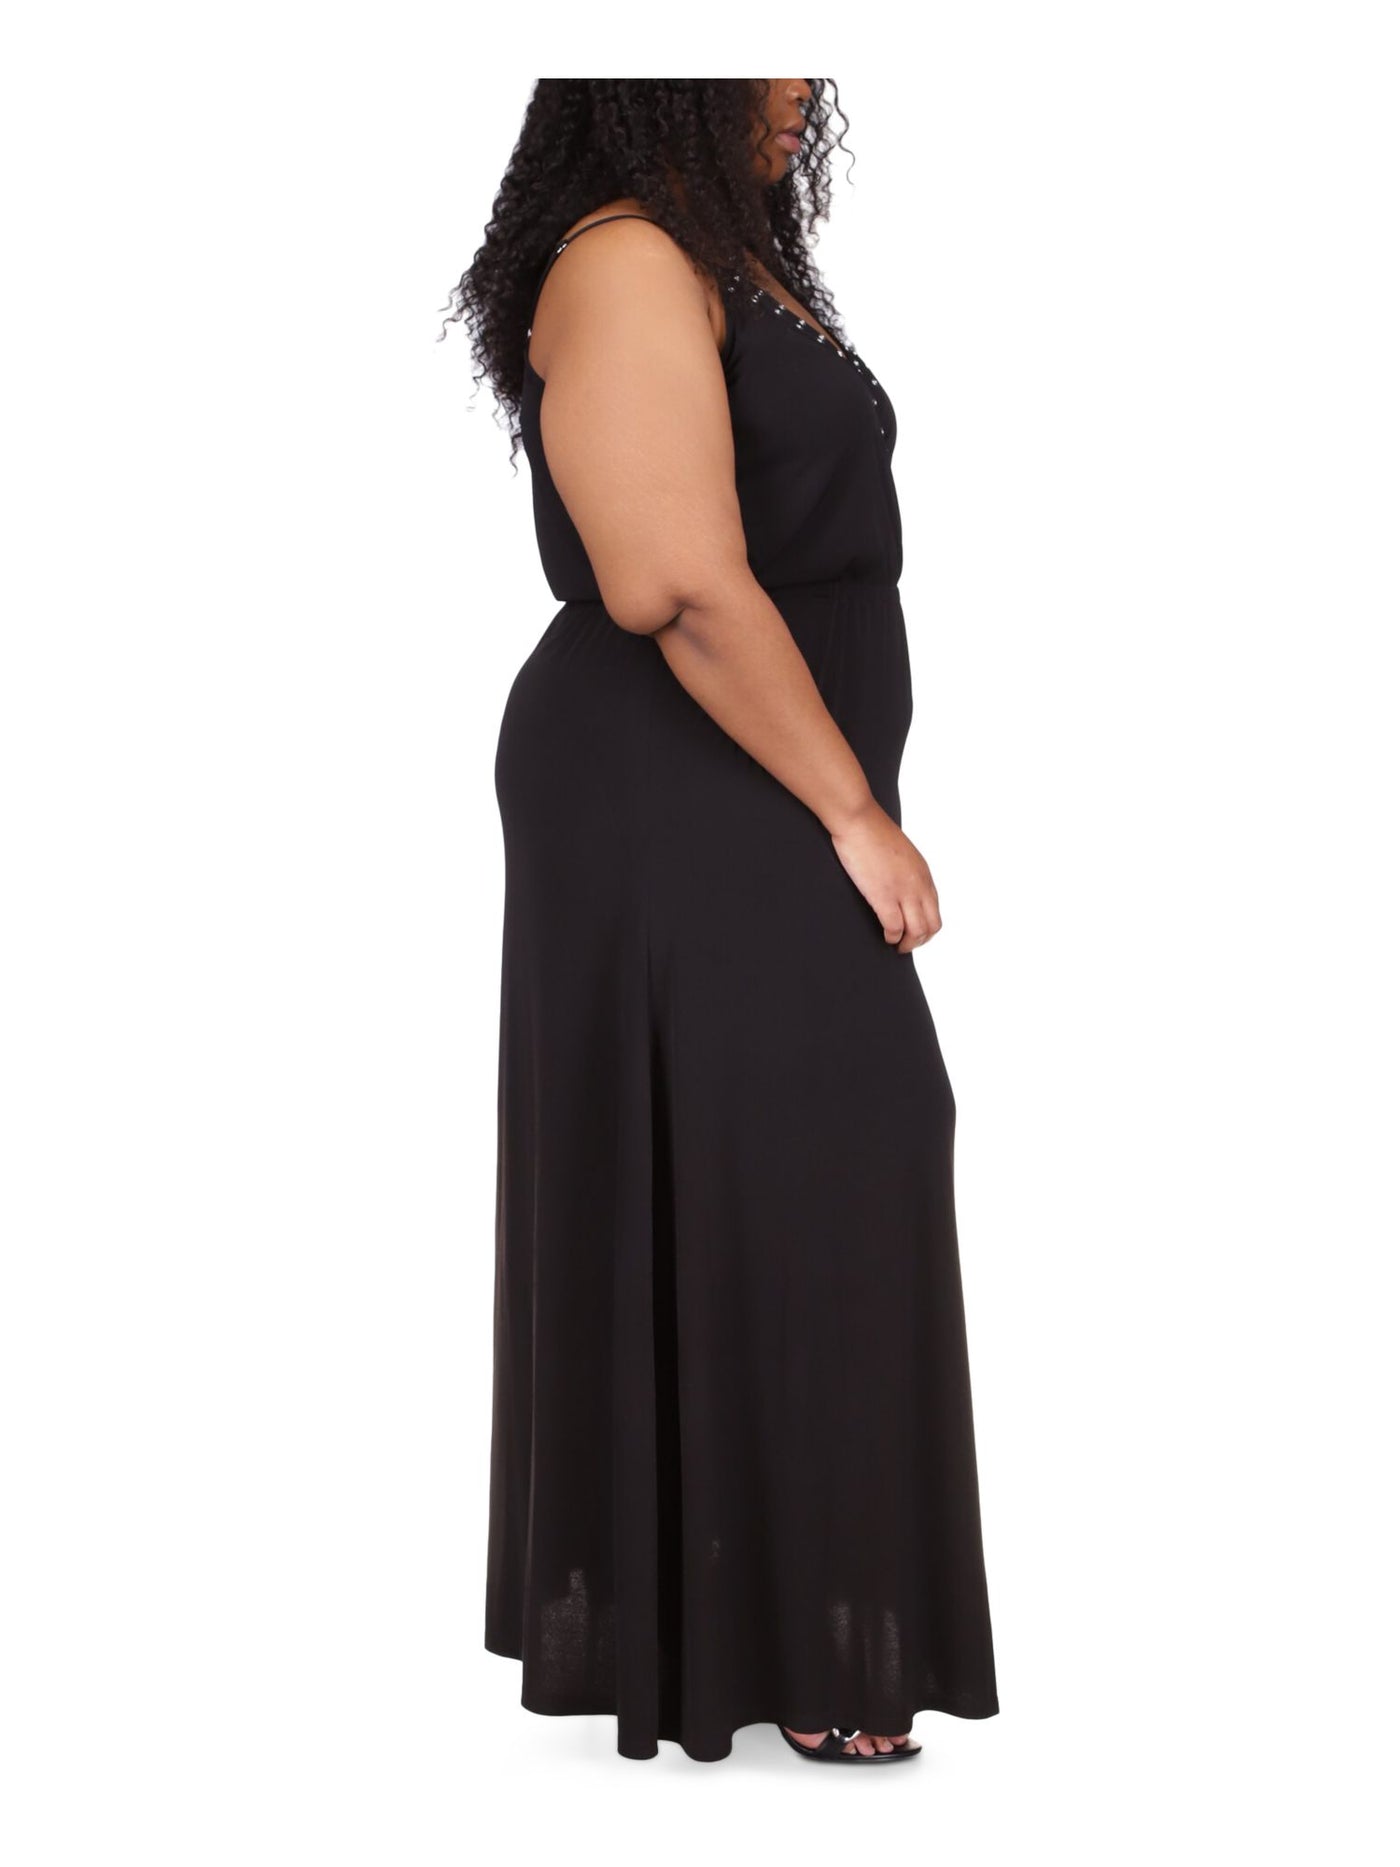 MICHAEL KORS Womens Black Adjustable Sheer Pullover Grommets Detail Unlined Sleeveless V Neck Full-Length Gown Dress Plus 3X